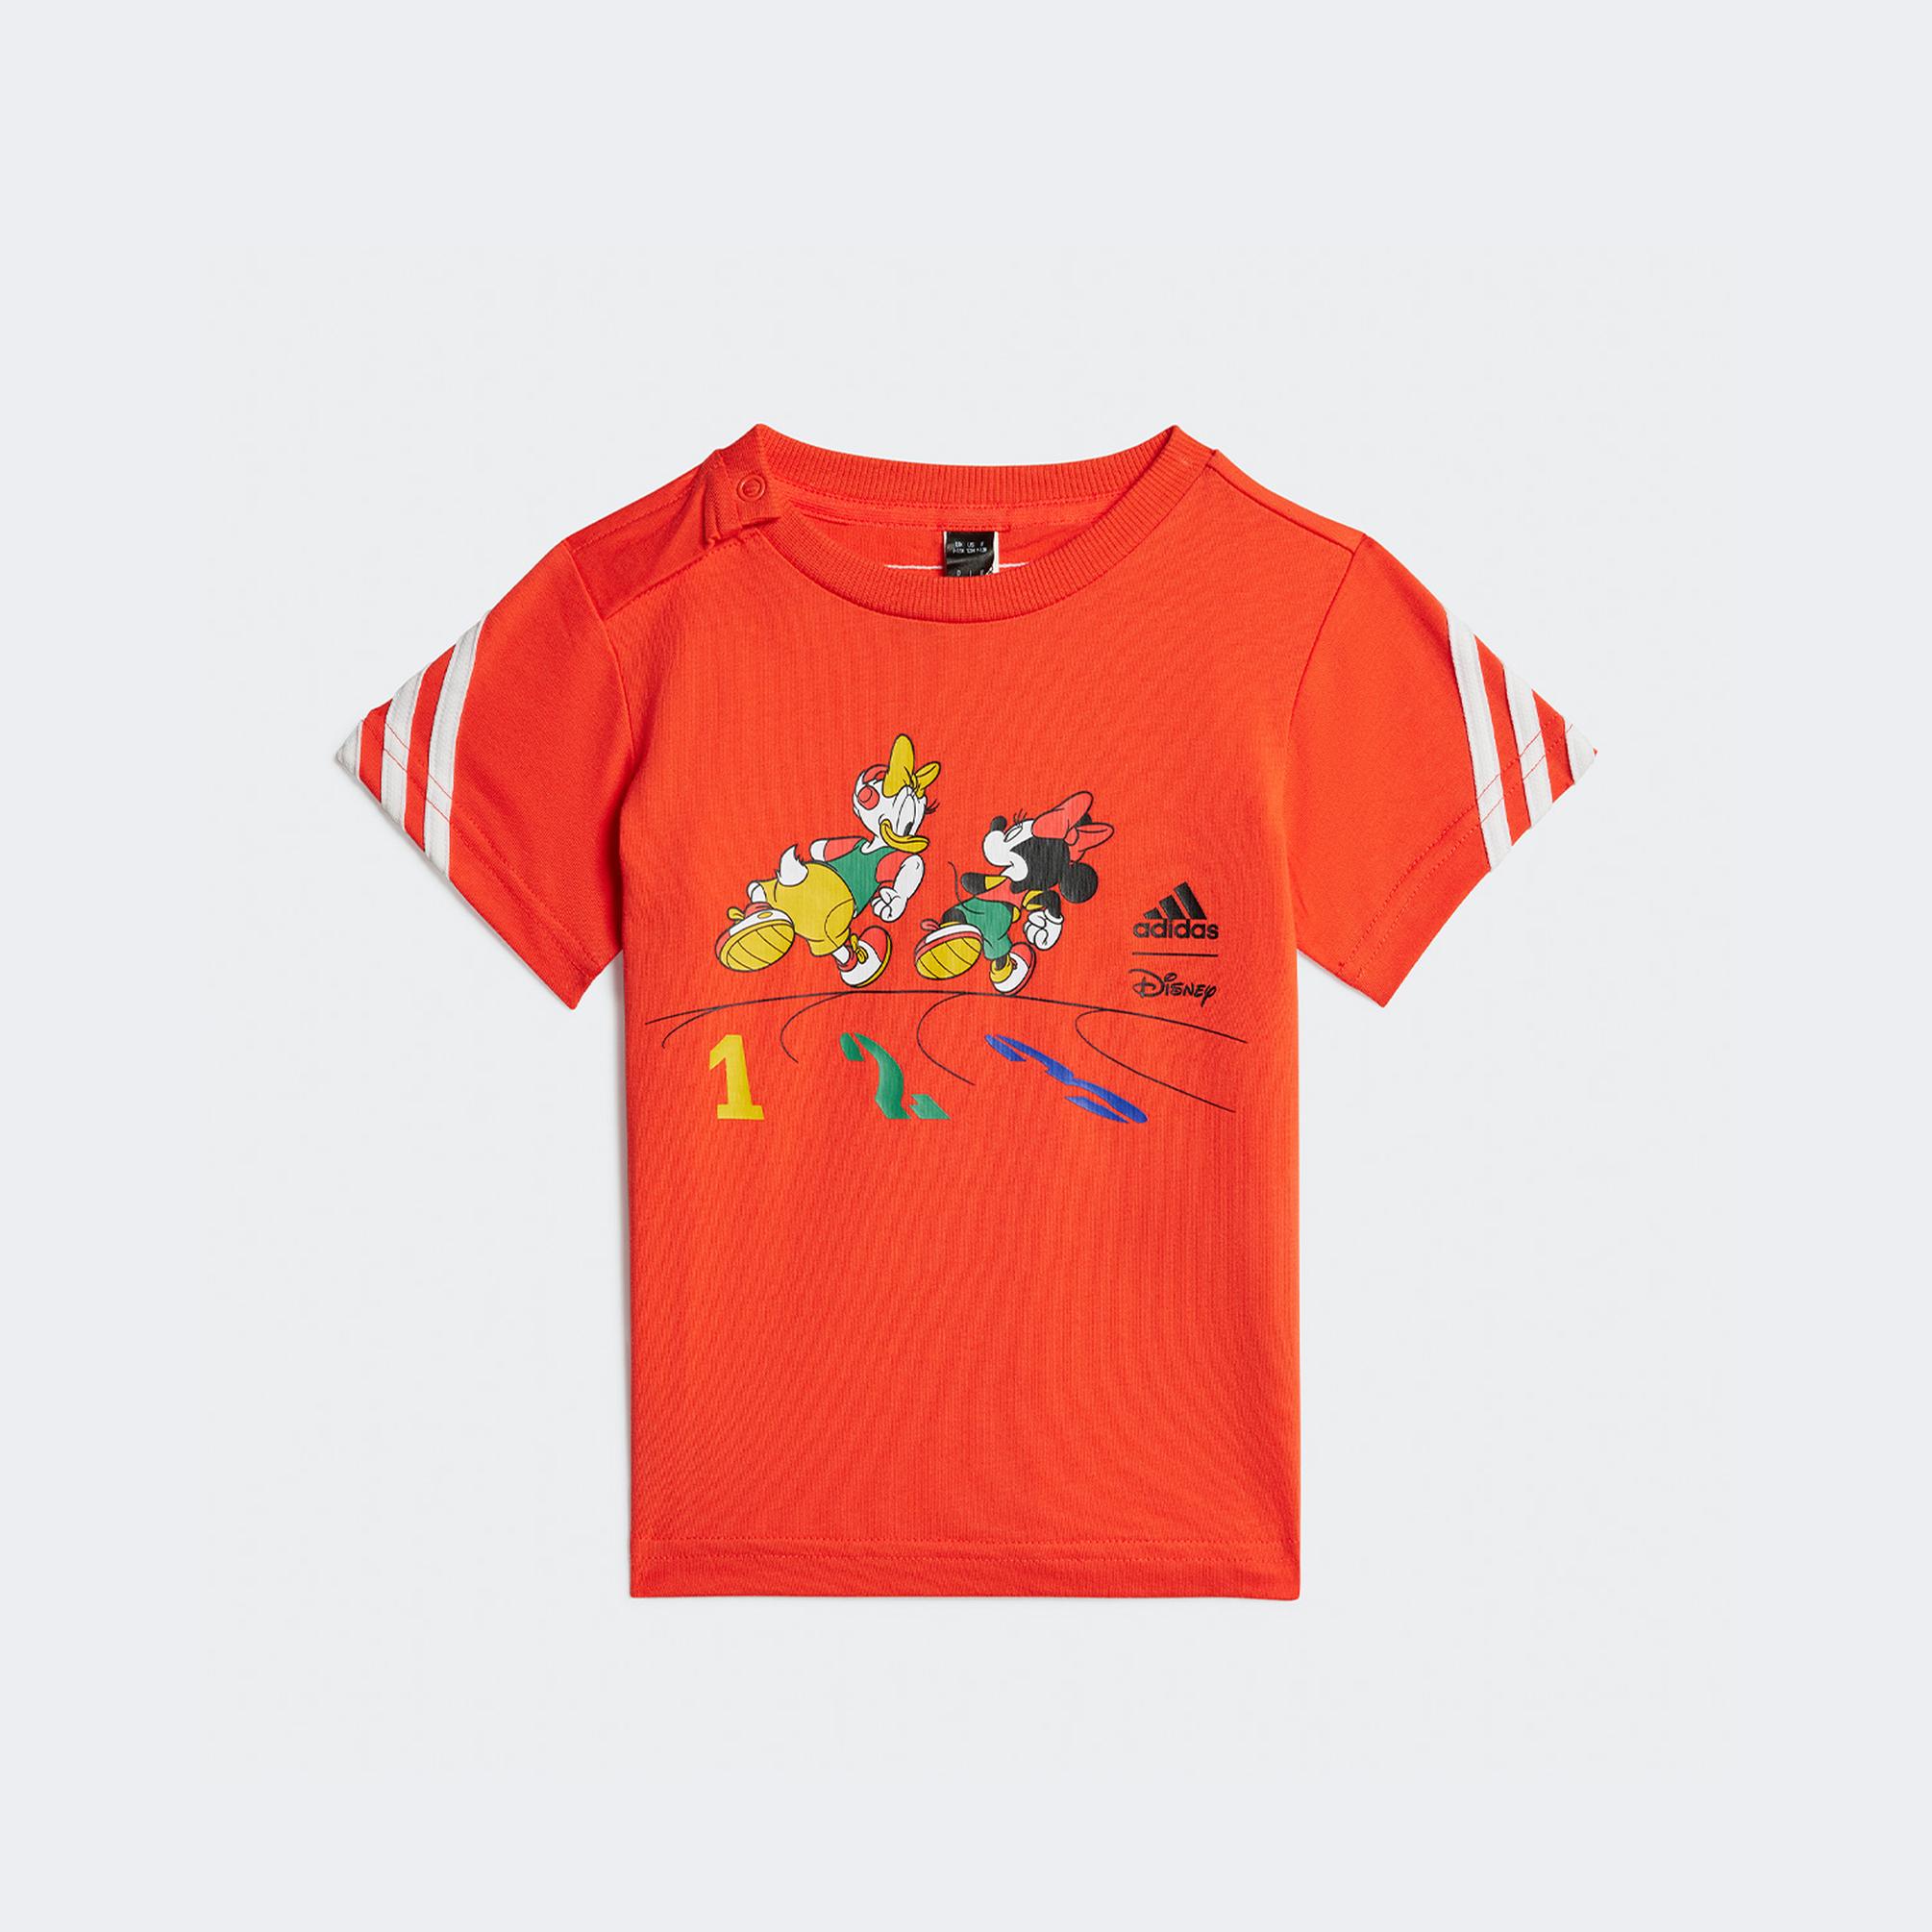  adidas x Disney Mickey Mouse Çocuk Turuncu T-Shirt